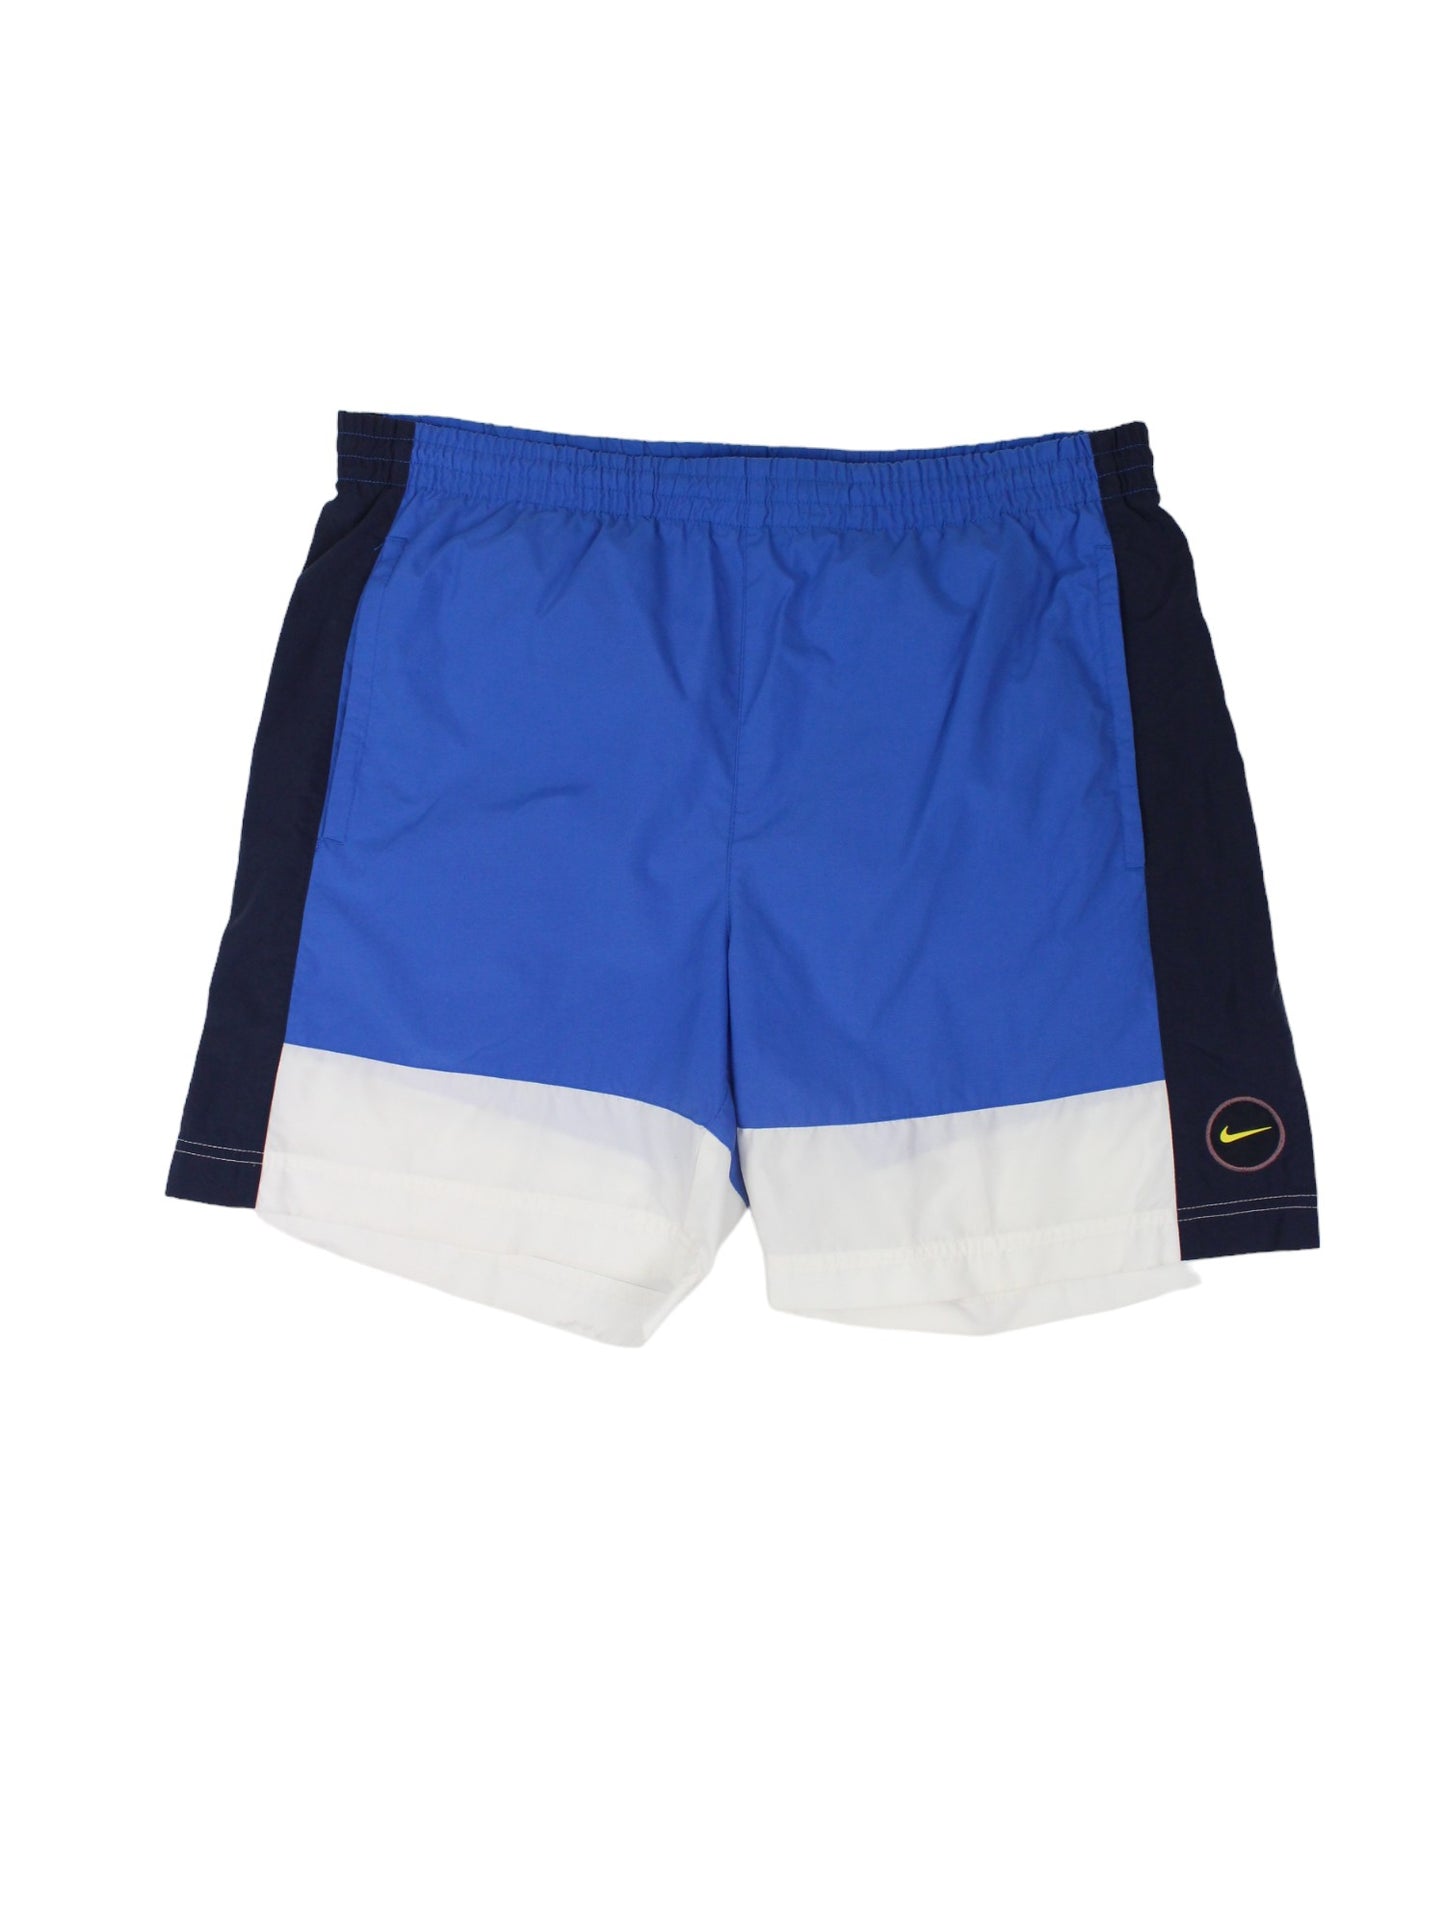 90s Nike blue Swim Shorts (L)